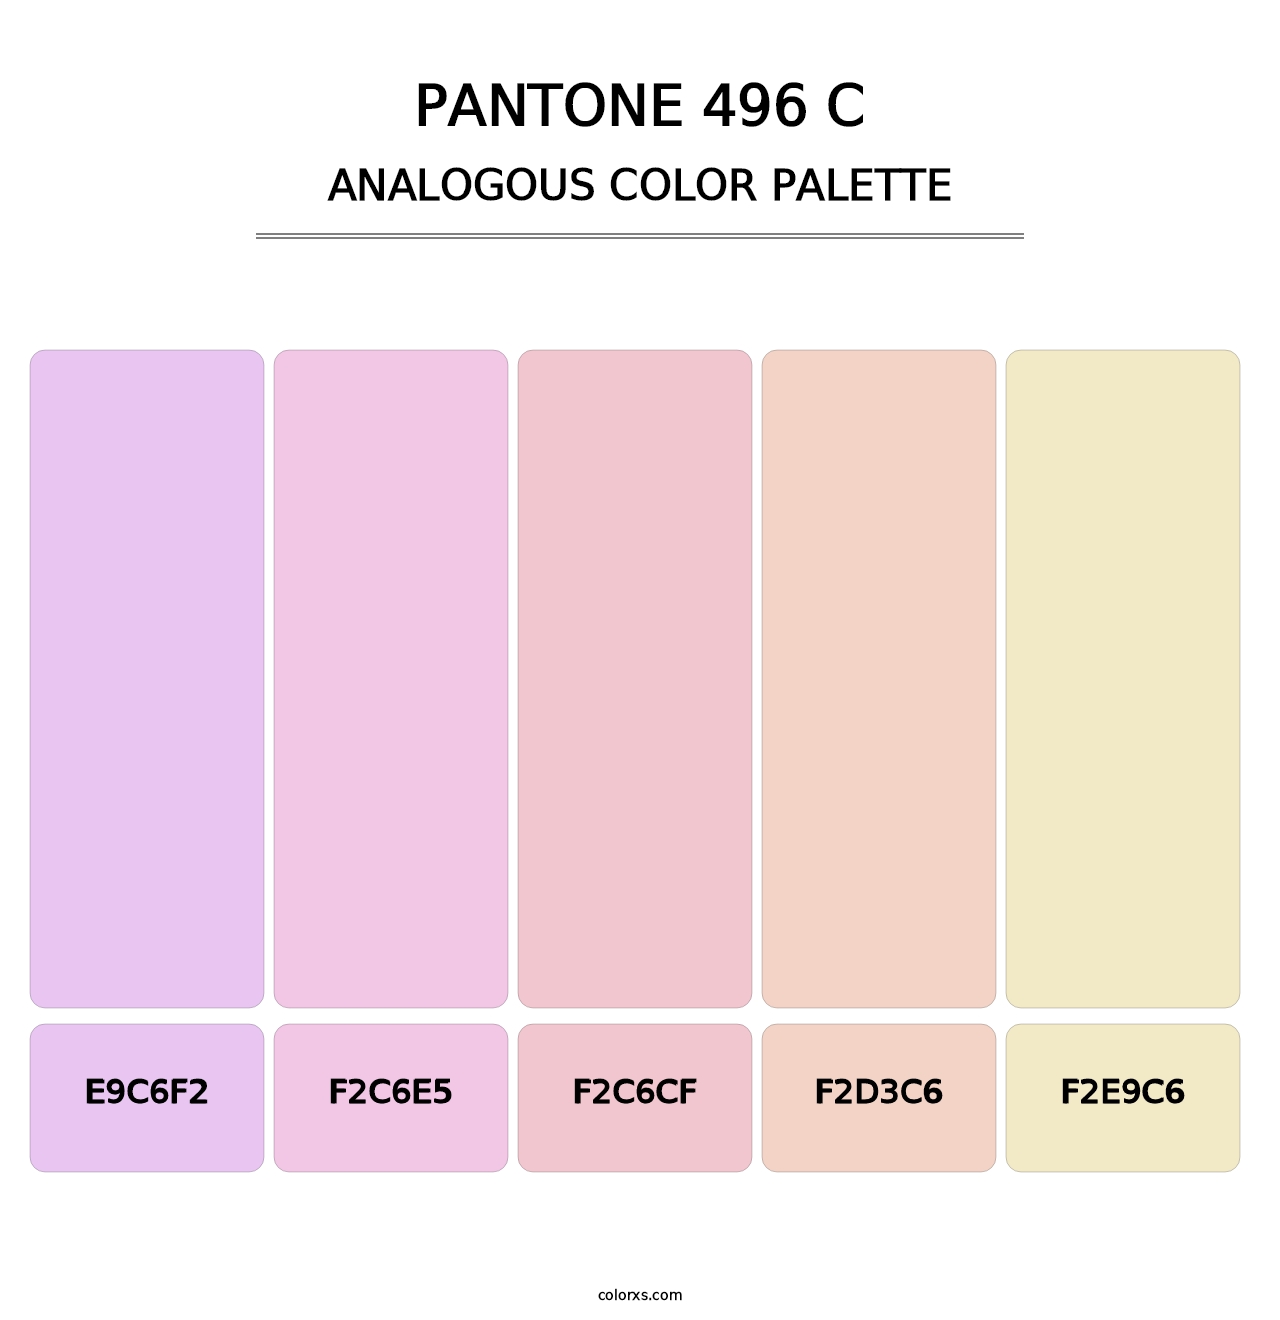 PANTONE 496 C - Analogous Color Palette